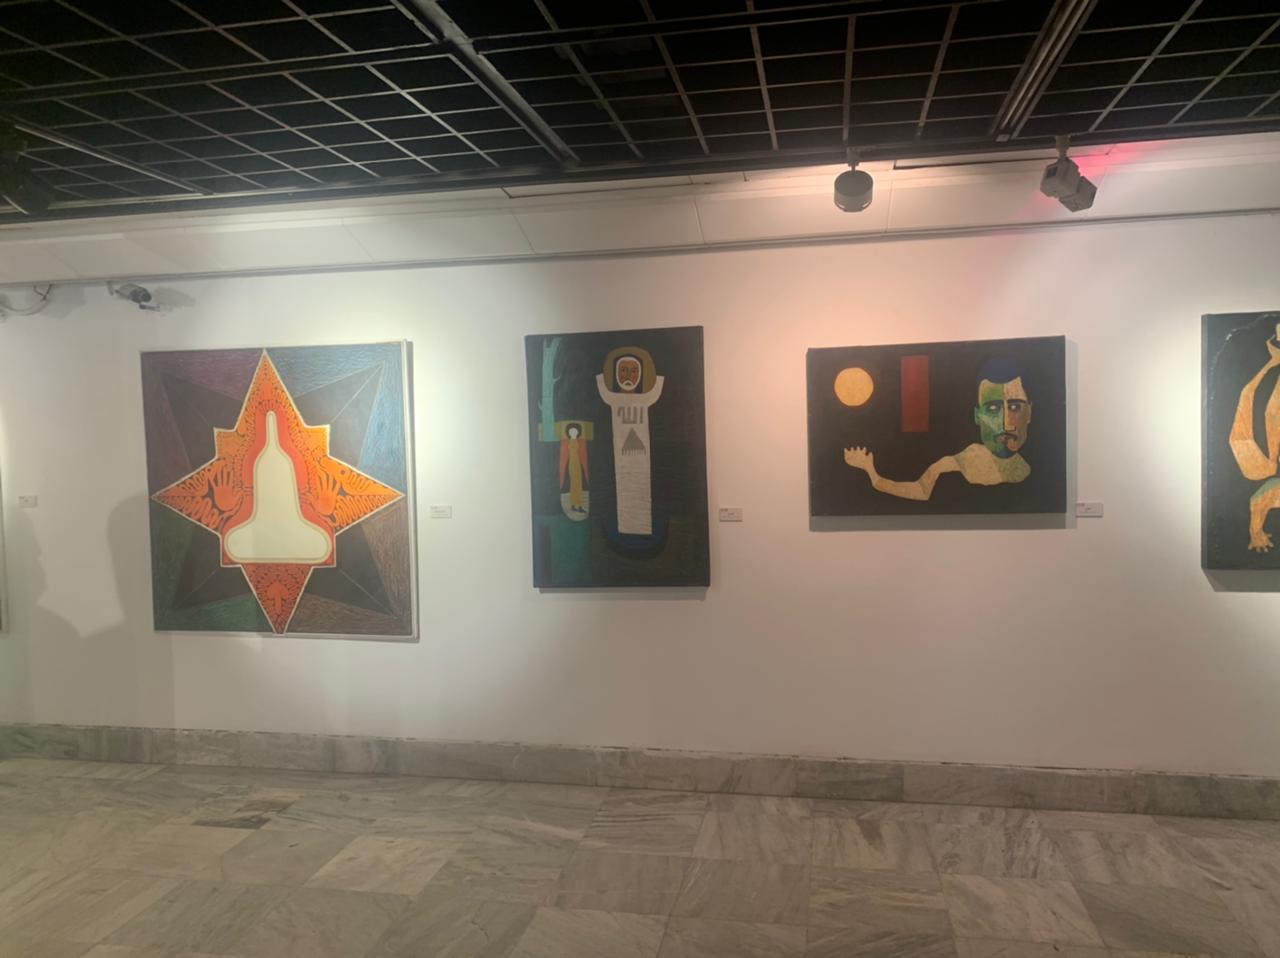 قطاع الفنون التشكيلية يحتفل بتوهج 80 عامًا للفنان عصمت داوستاشى بمركز الجزيرة للفنون (7)